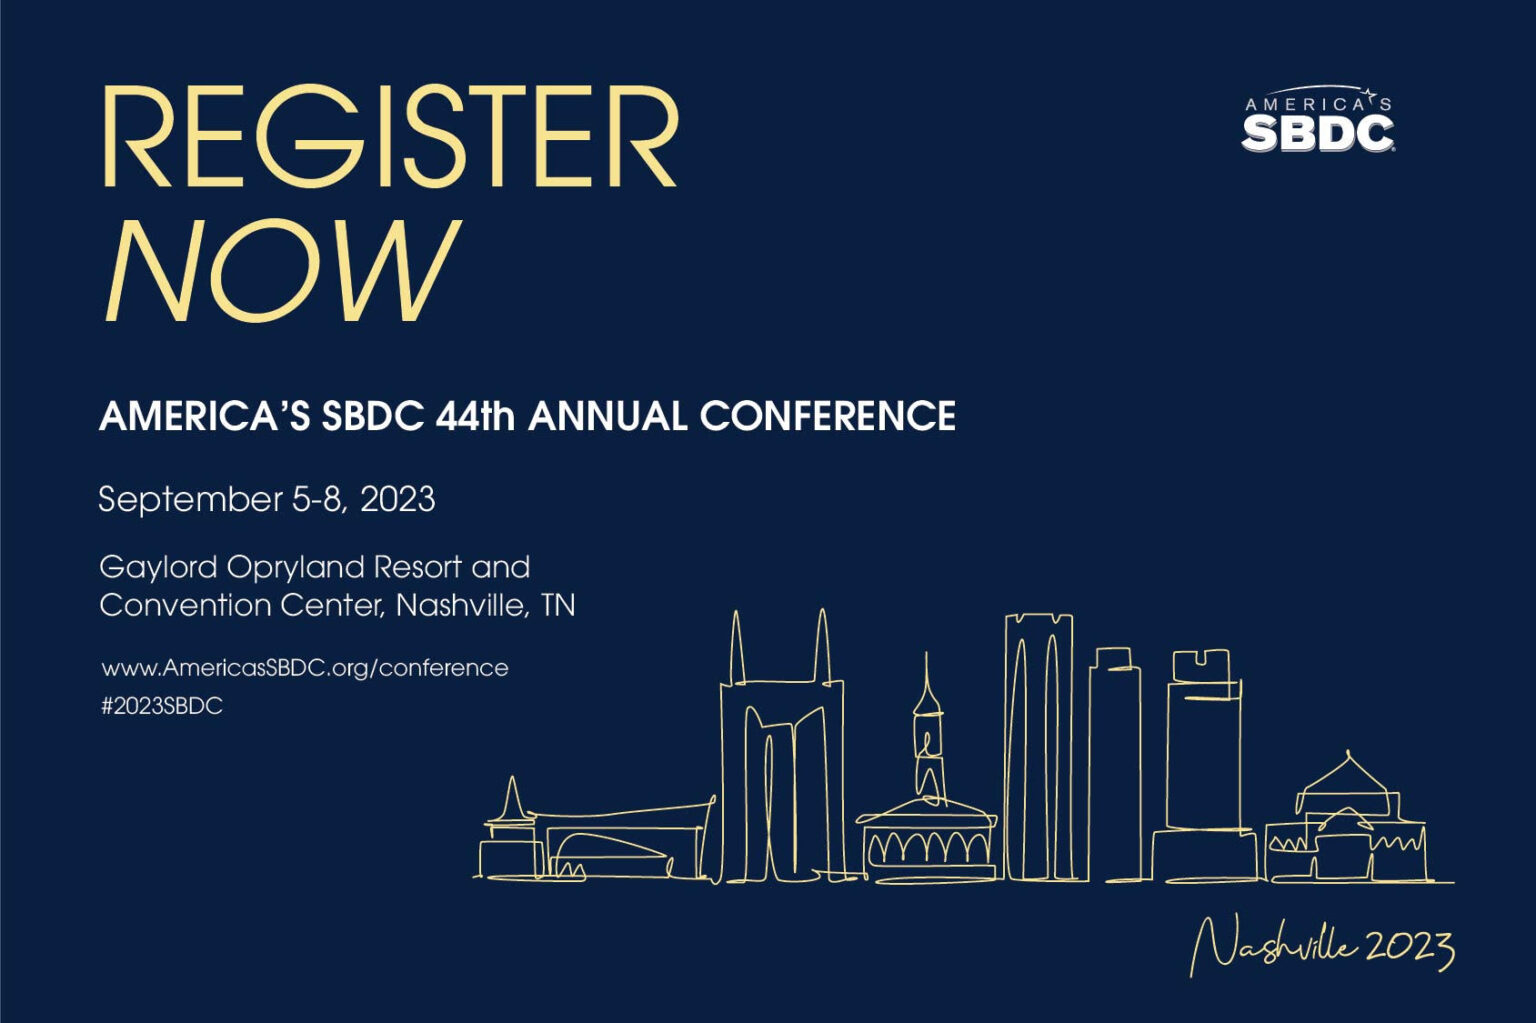 Annual Conference 2023 America's SBDC